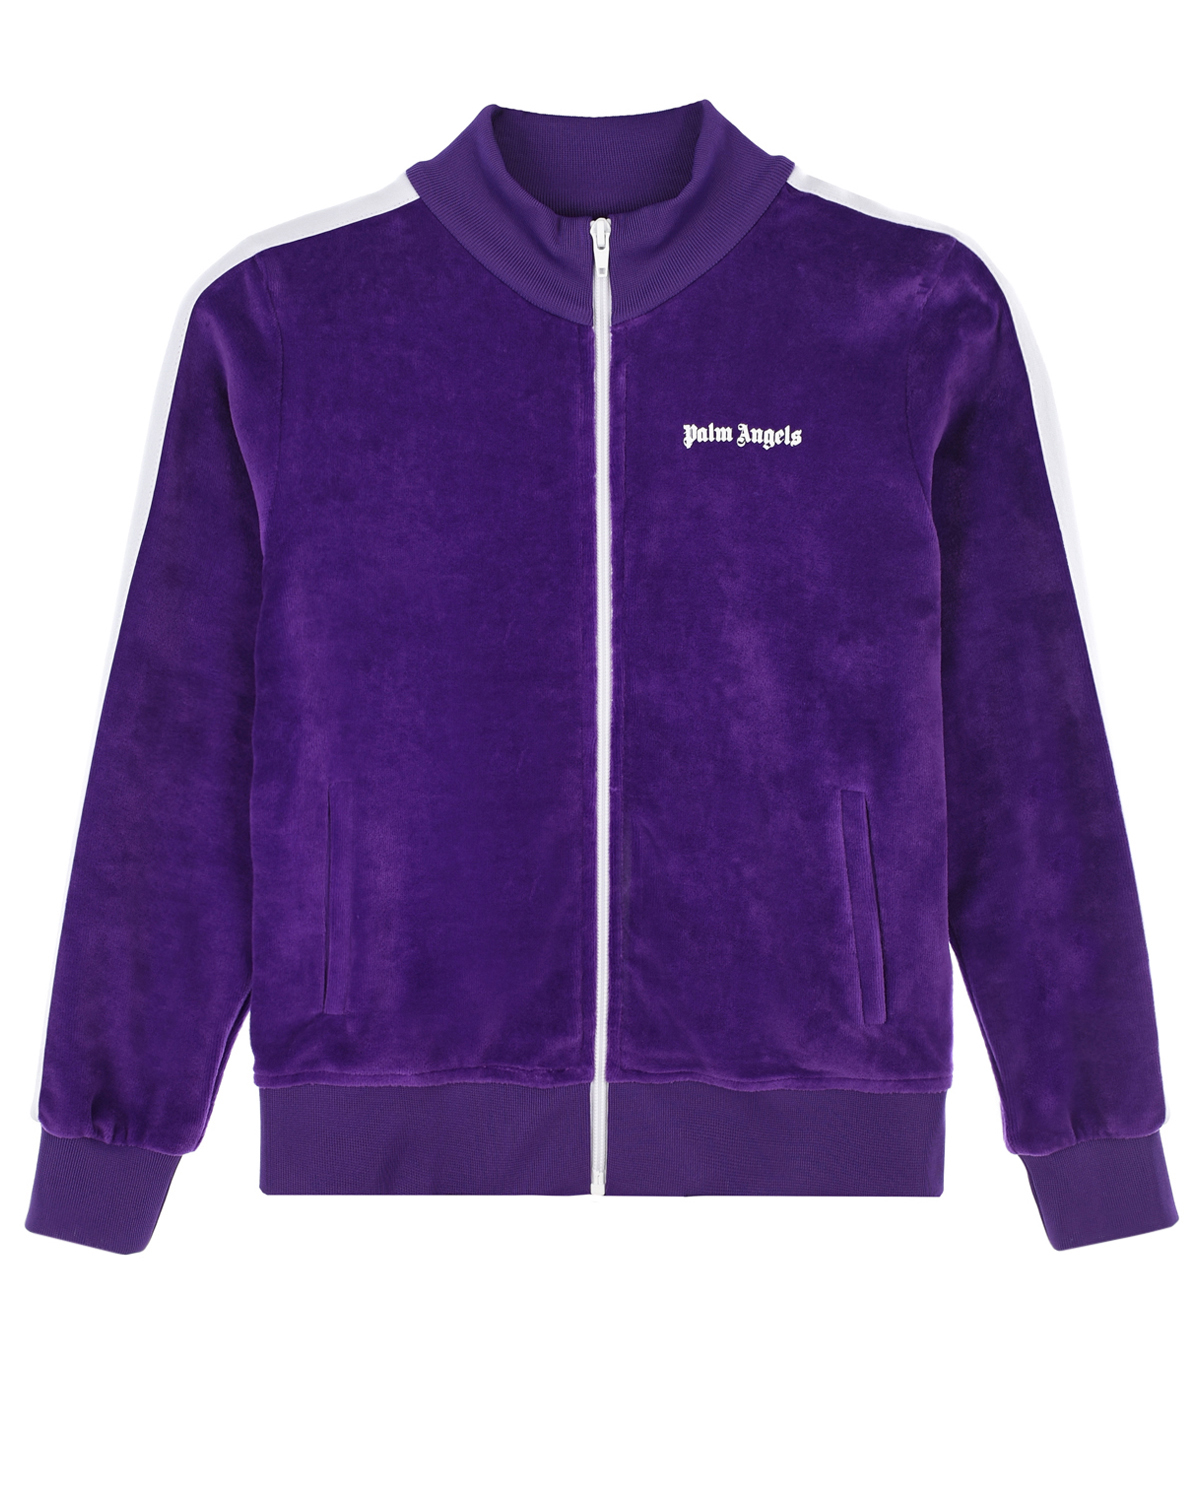 Фиолетовая спортивная куртка с белыми лампасами Palm Angels детская, размер 116, цвет фиолетовый - фото 1